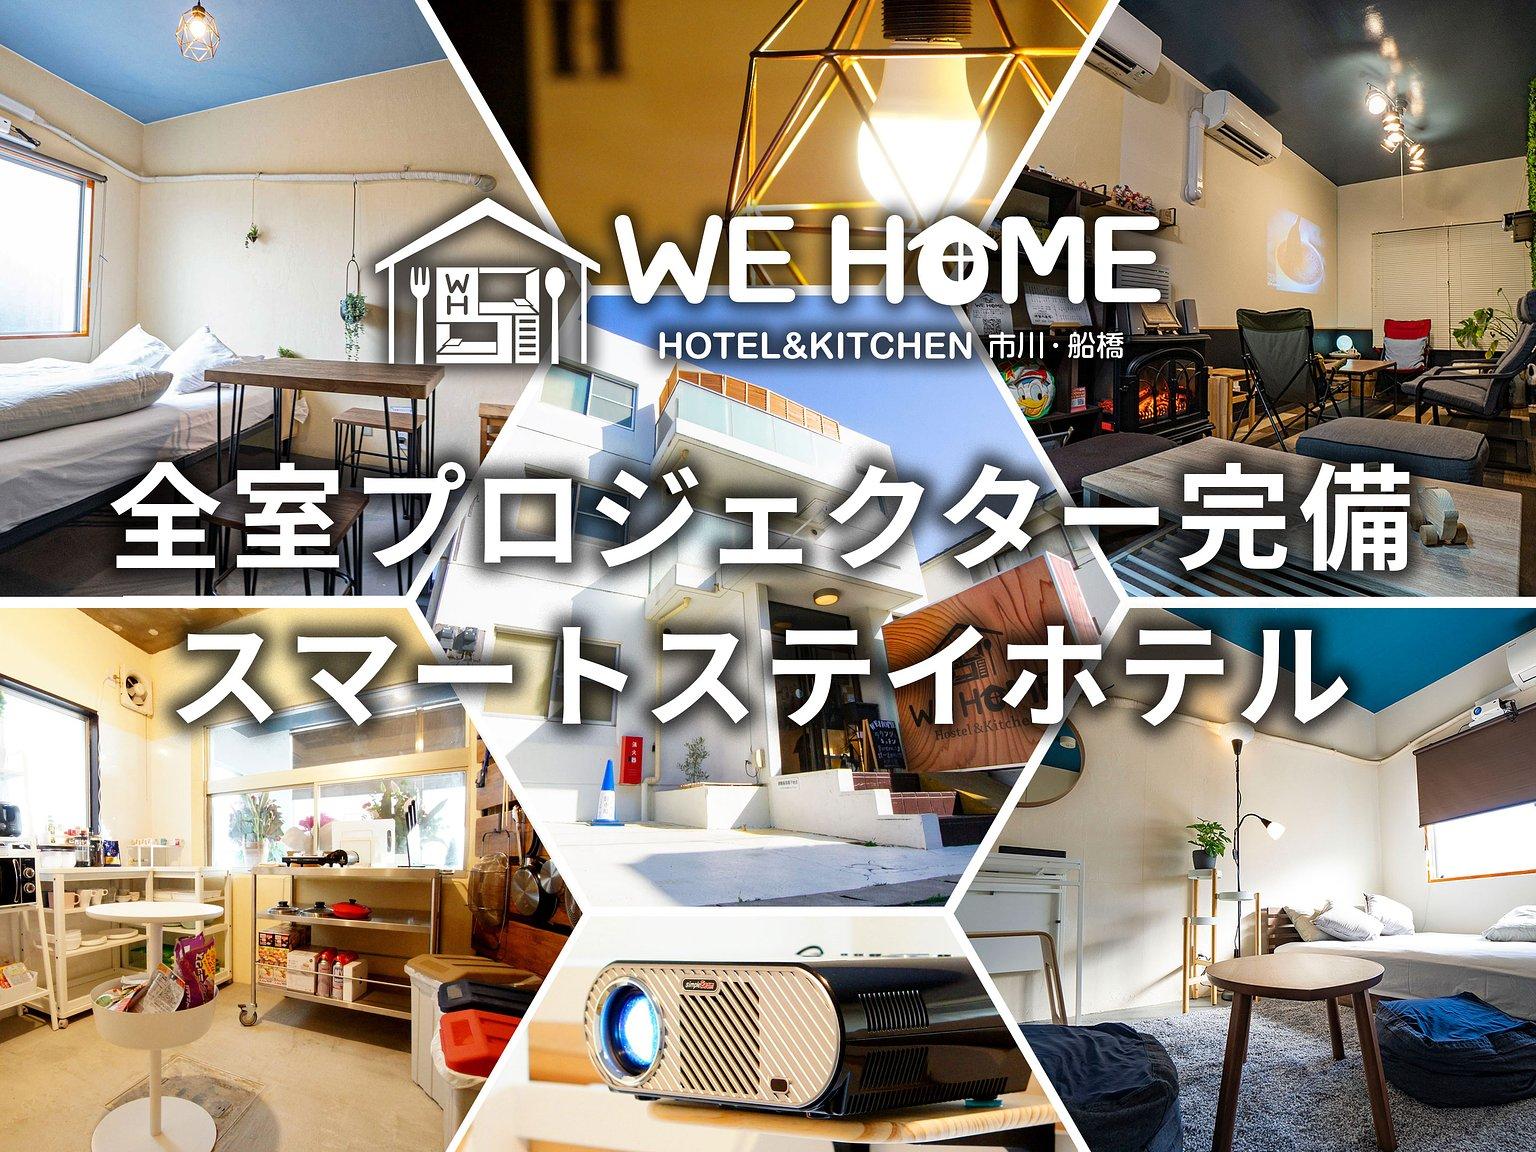 お部屋タイプお任せ(専用プロジェクター付/シアタールーム) - WE HOME HOTEL&KITCHEN 市川・船橋